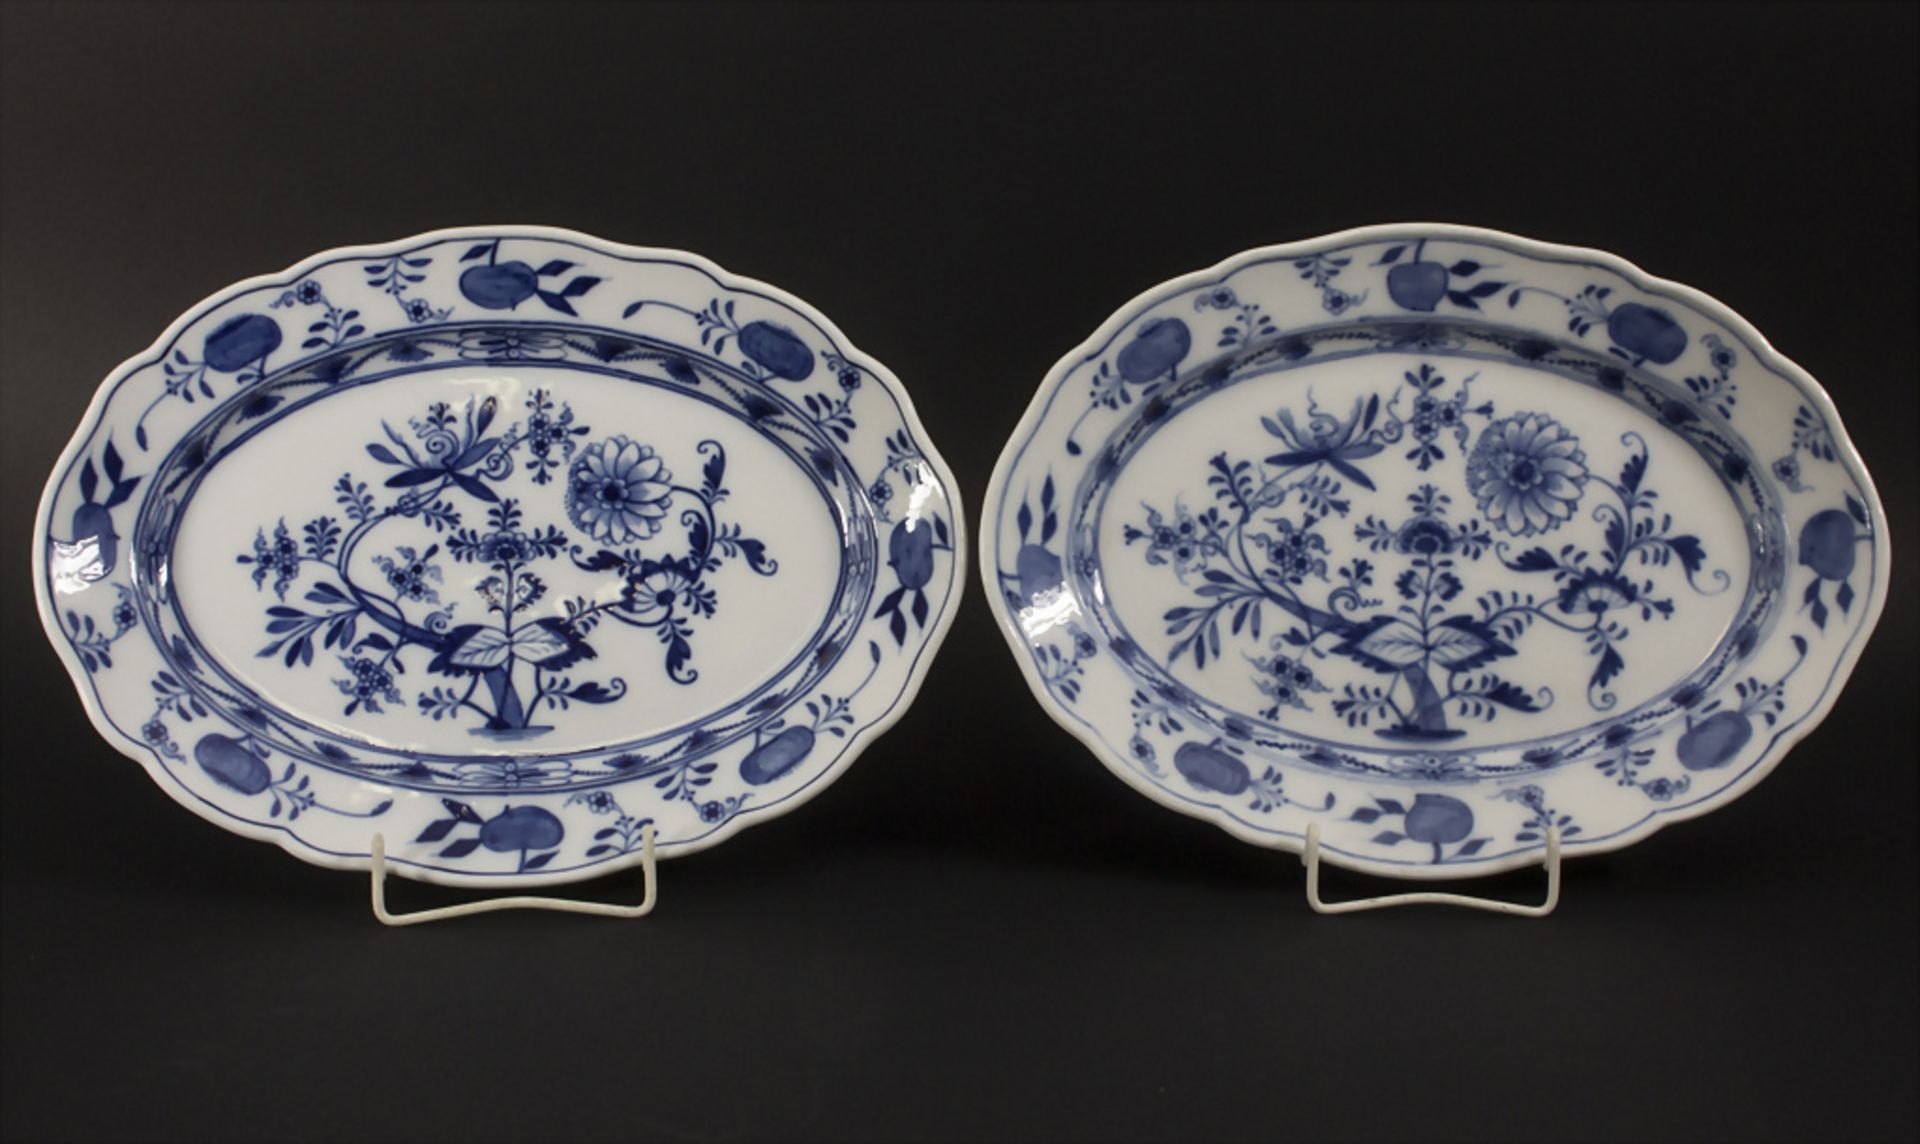 Zwei Zwiebelmuster Servierplatten / Two onion pattern serving plates, Meissen, 19. Jh.